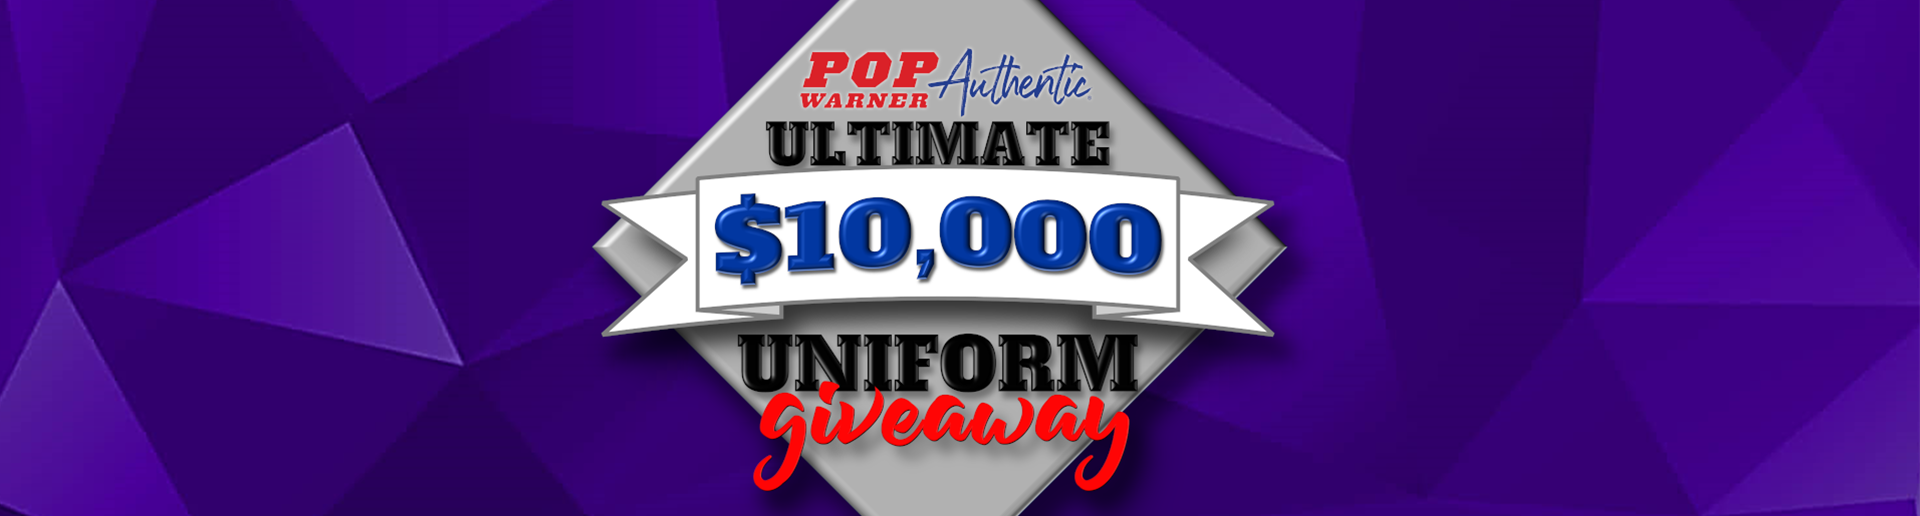 Ultimate $10k Uniform Giveaway